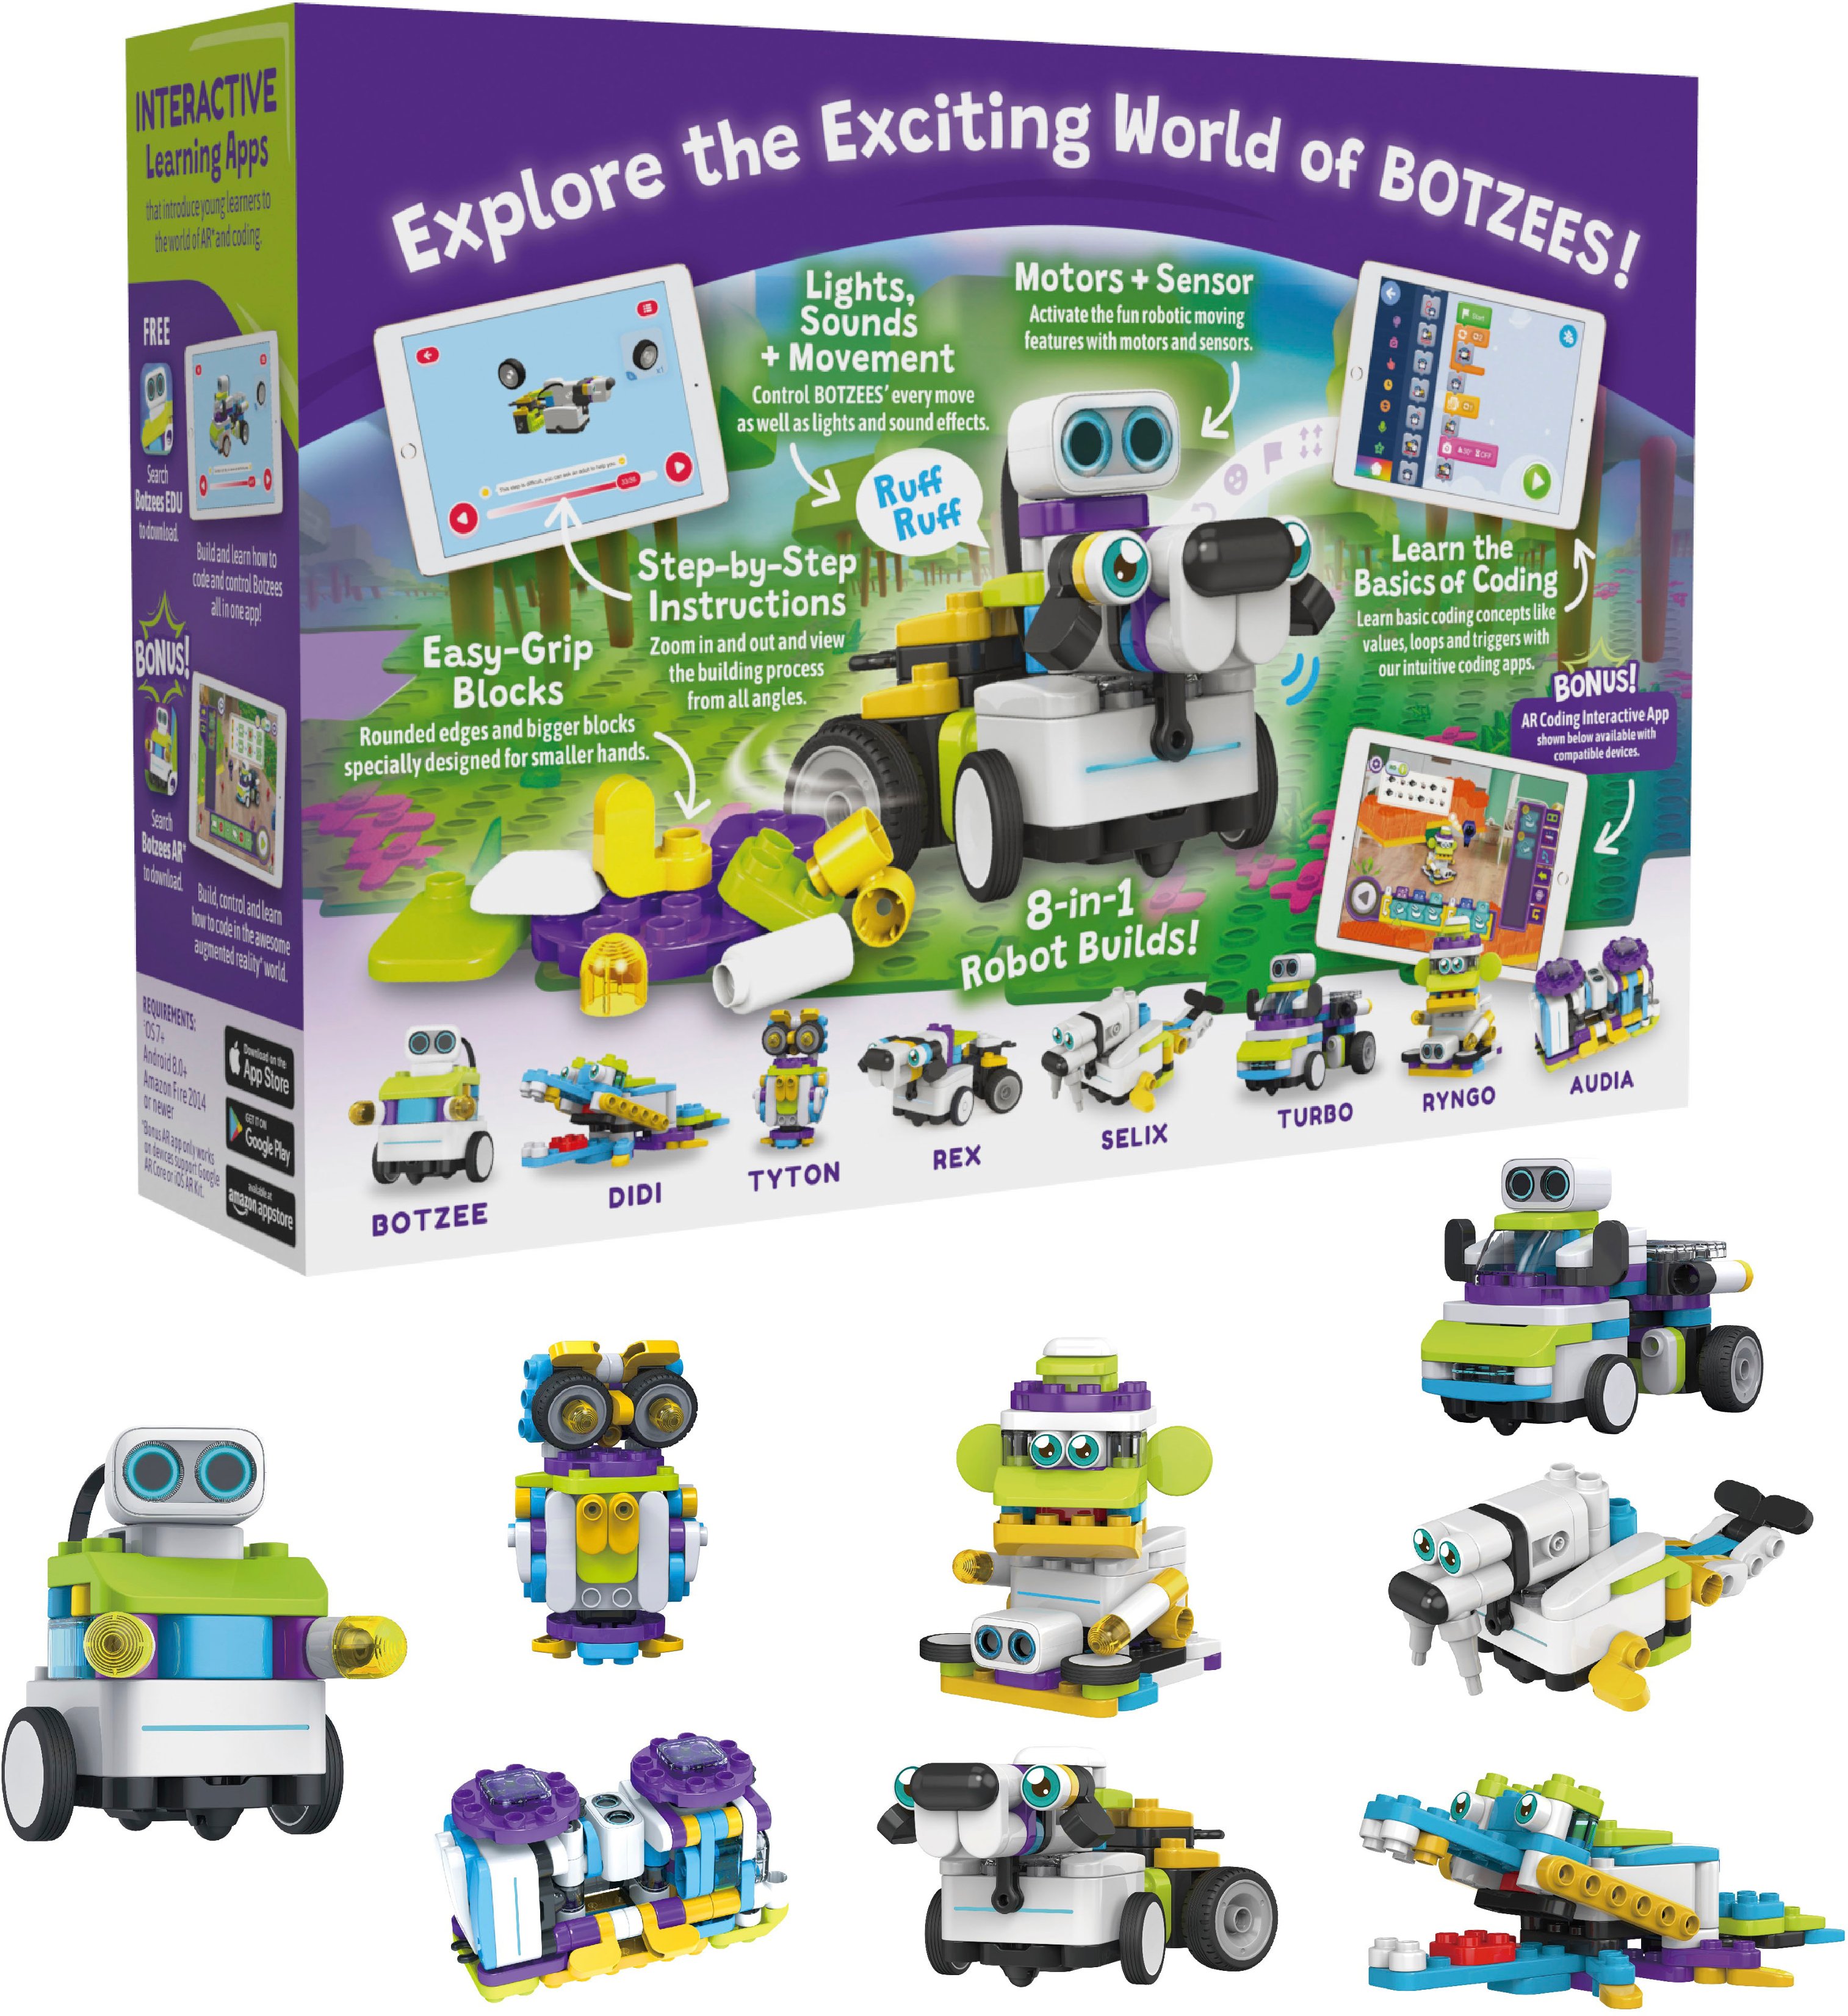 Botzees 30 réalité augmentée iPad Programming Puzzles Robots 6in1 âge 4 83101 